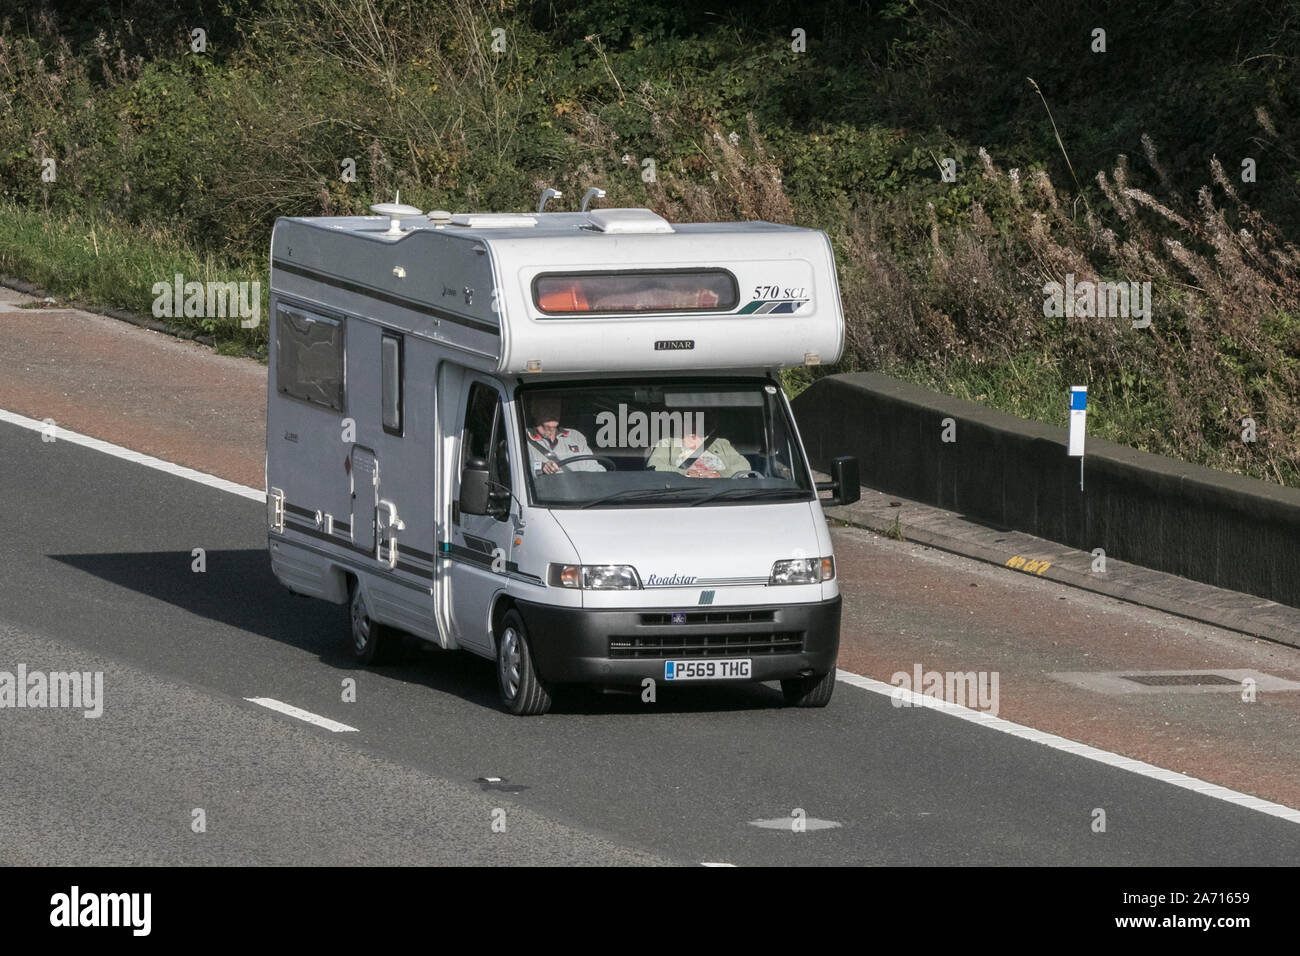 Roadstar lunaire Fiat véhicule récréatif rv camping camping-van voyageant sur l'autoroute M6 près de Preston dans le Lancashire, Royaume-Uni Banque D'Images